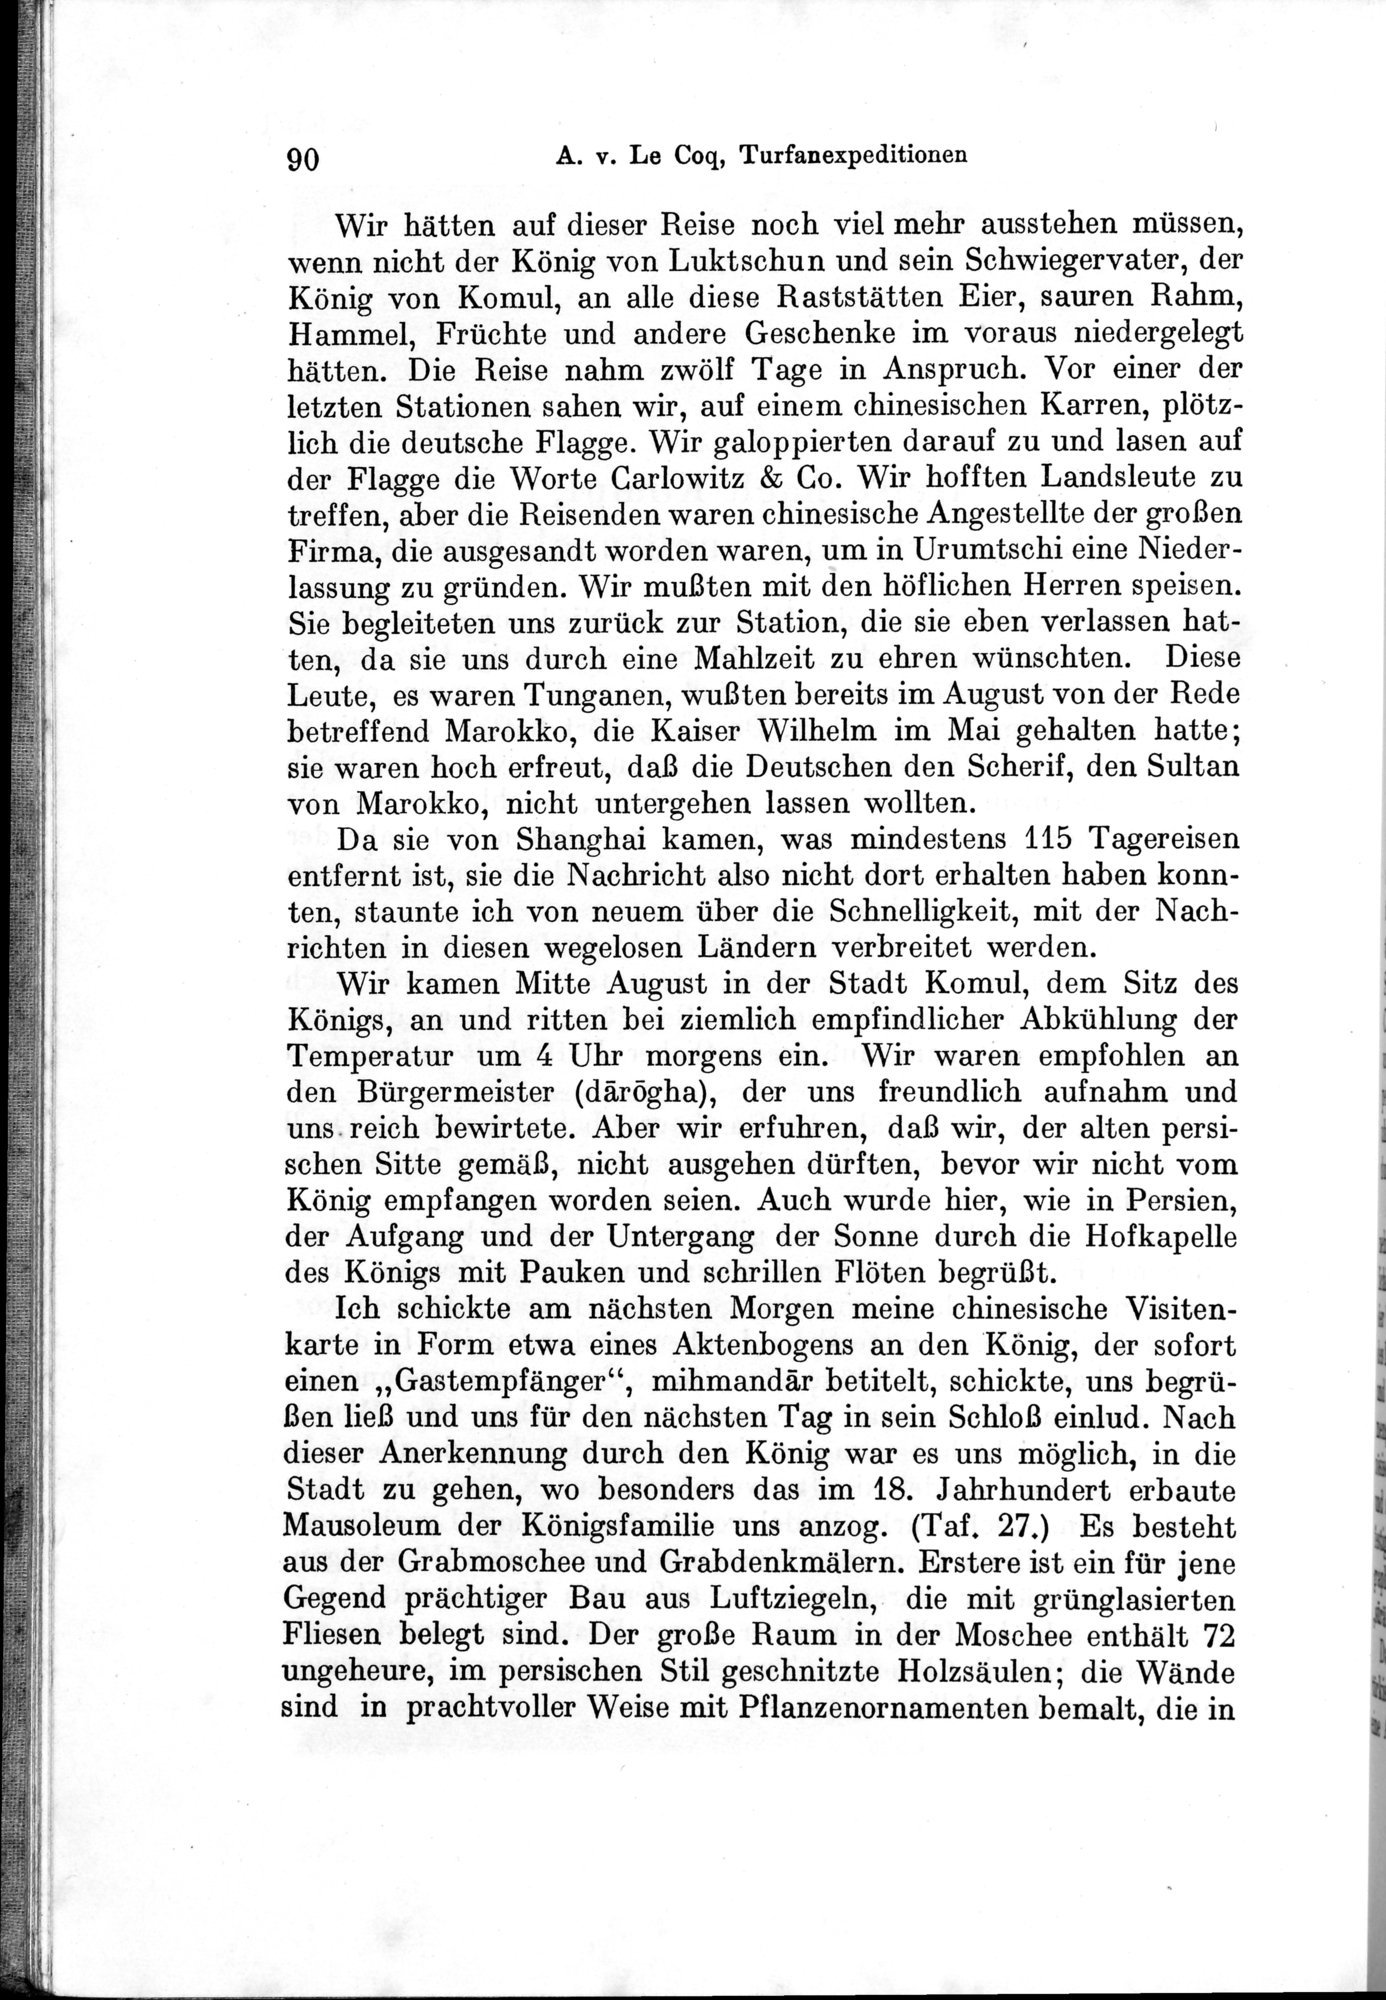 Auf Hellas Spuren in Ostturkistan : vol.1 / Page 134 (Grayscale High Resolution Image)